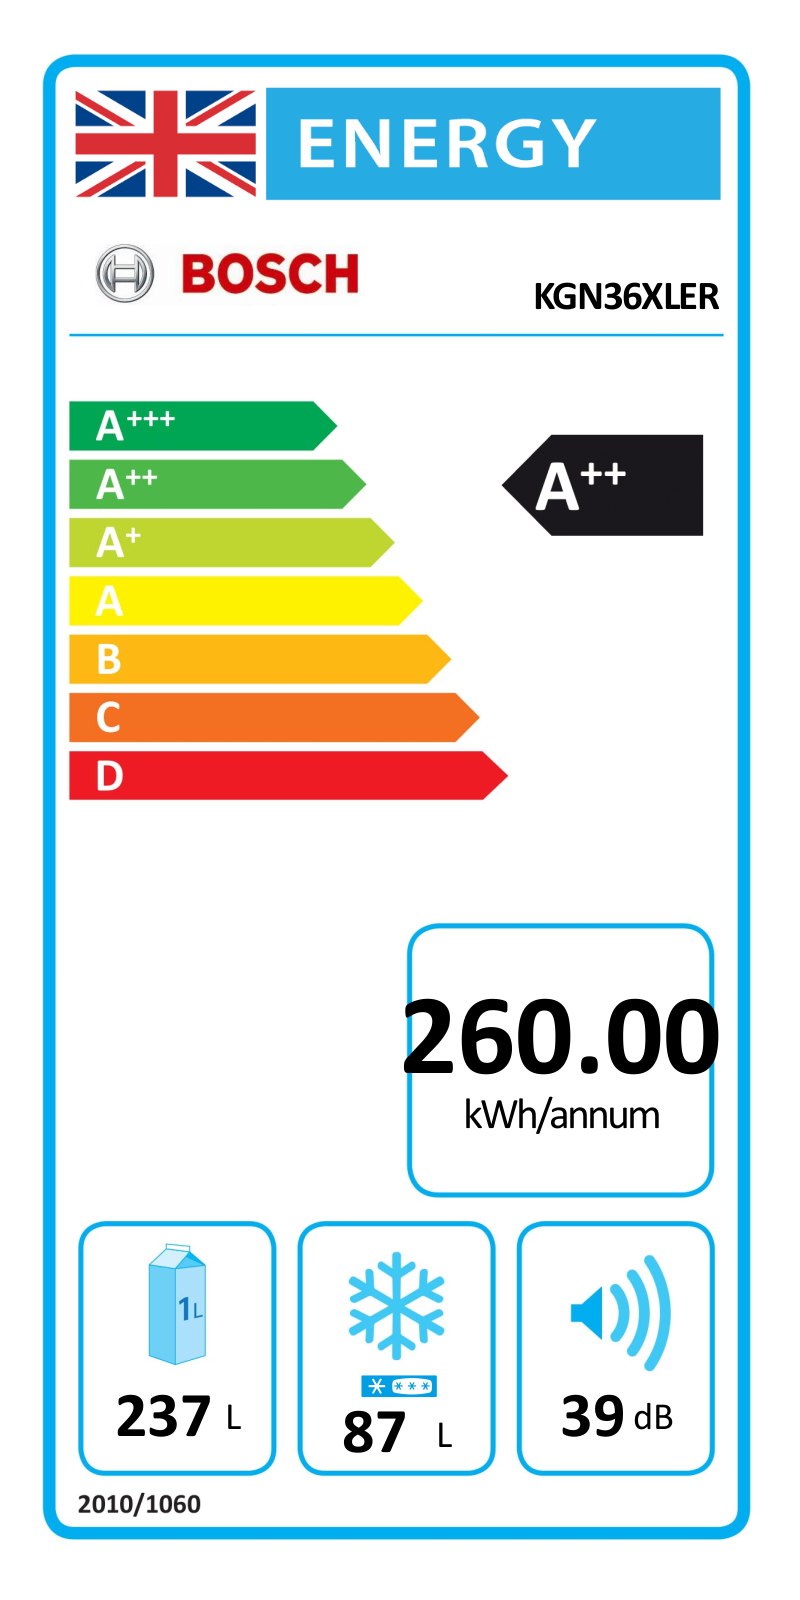 Bosch KGN36XLER EU Energy Label